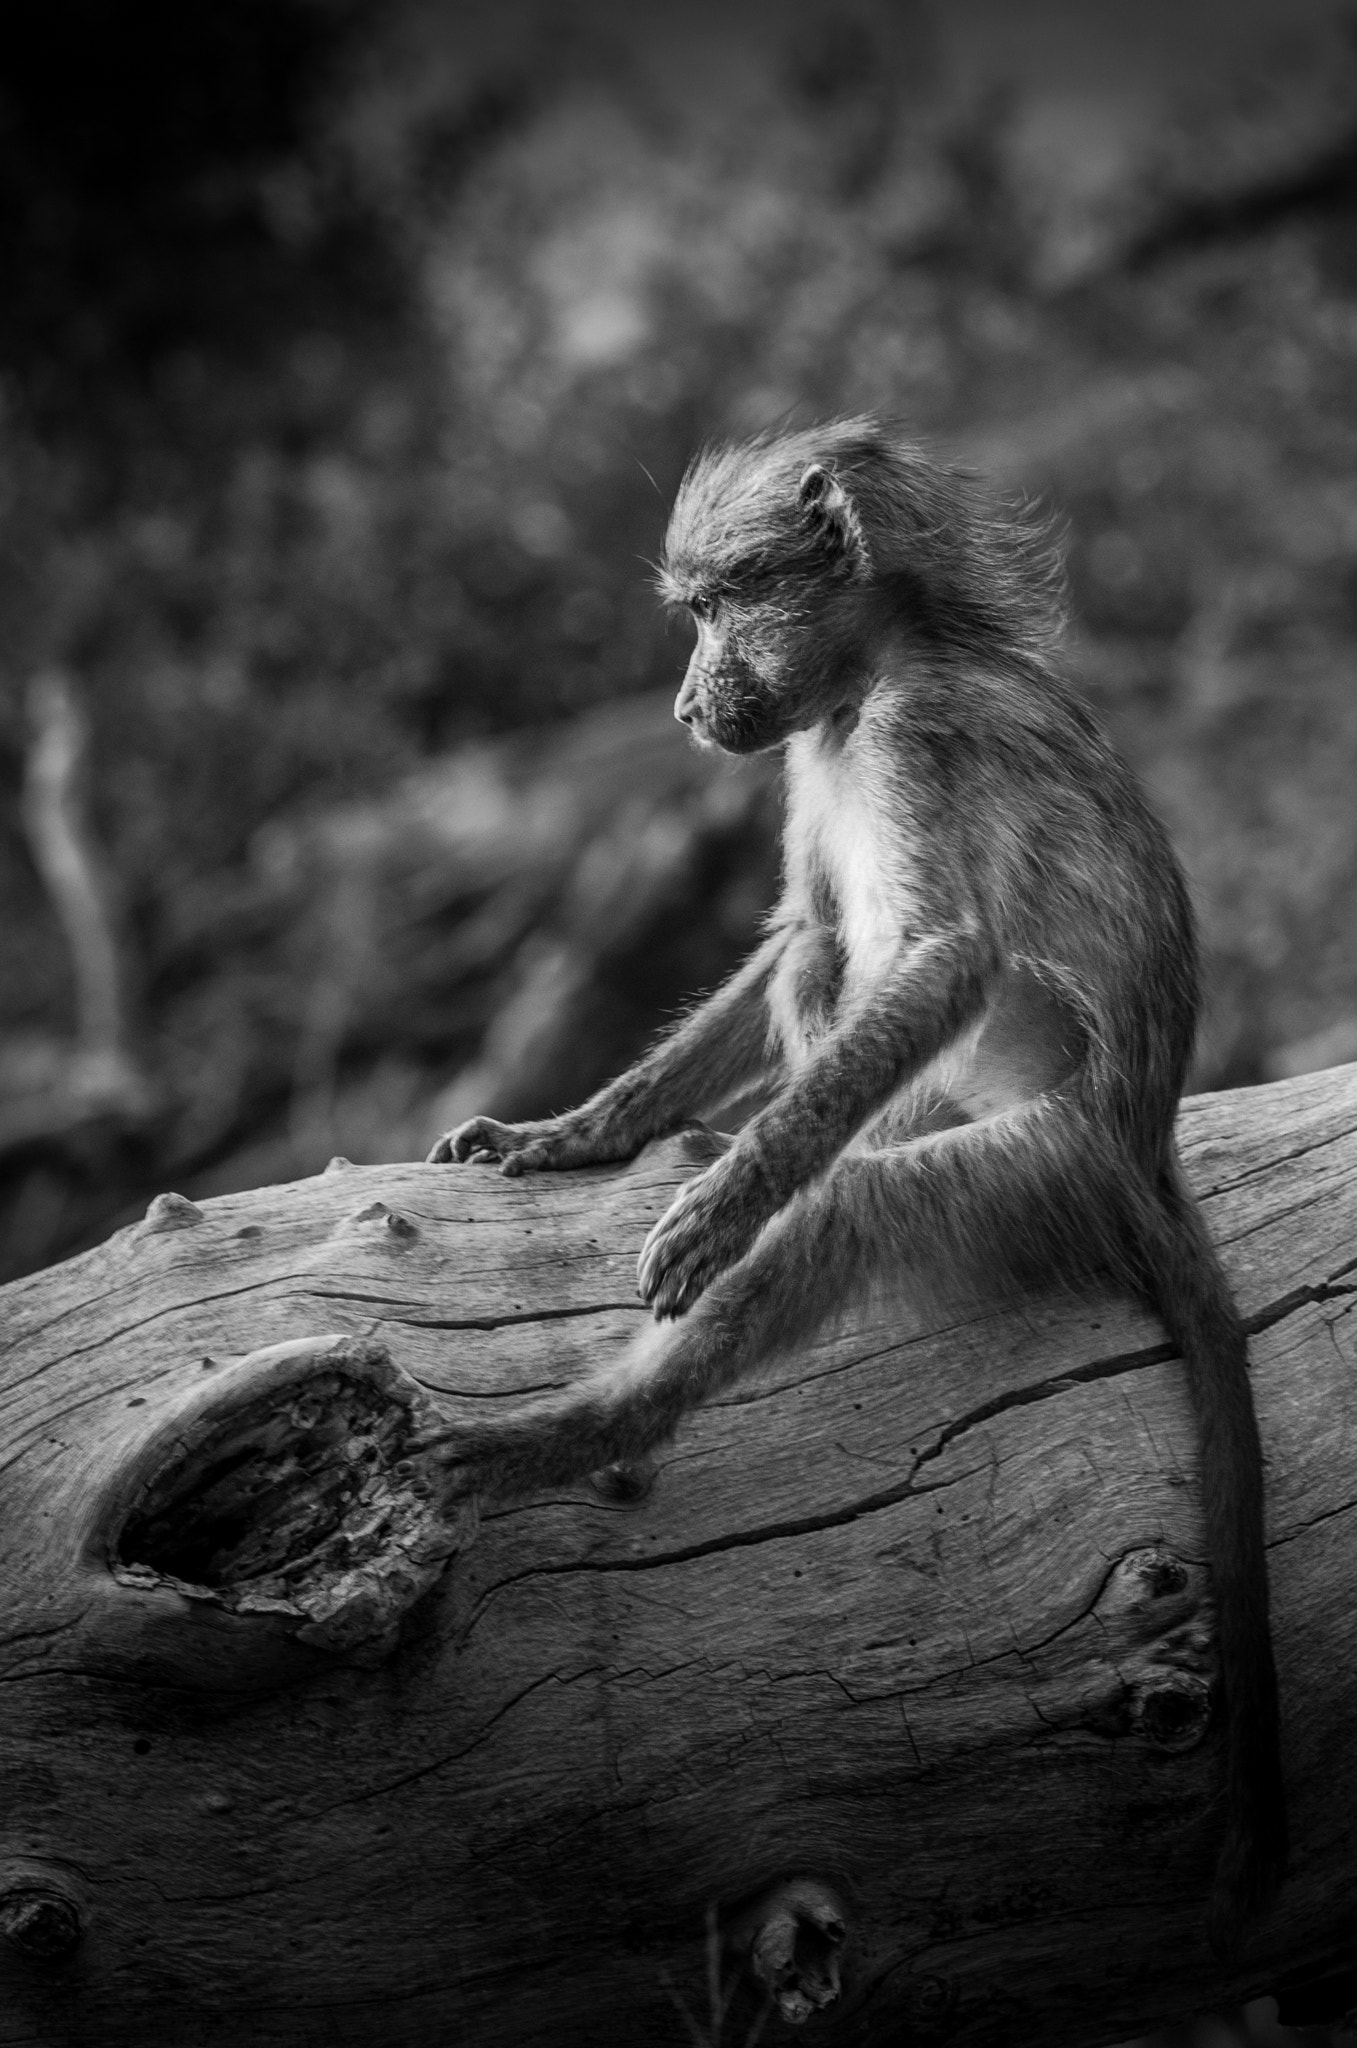 Pentax K-5 II sample photo. Thougtfull baboon photography